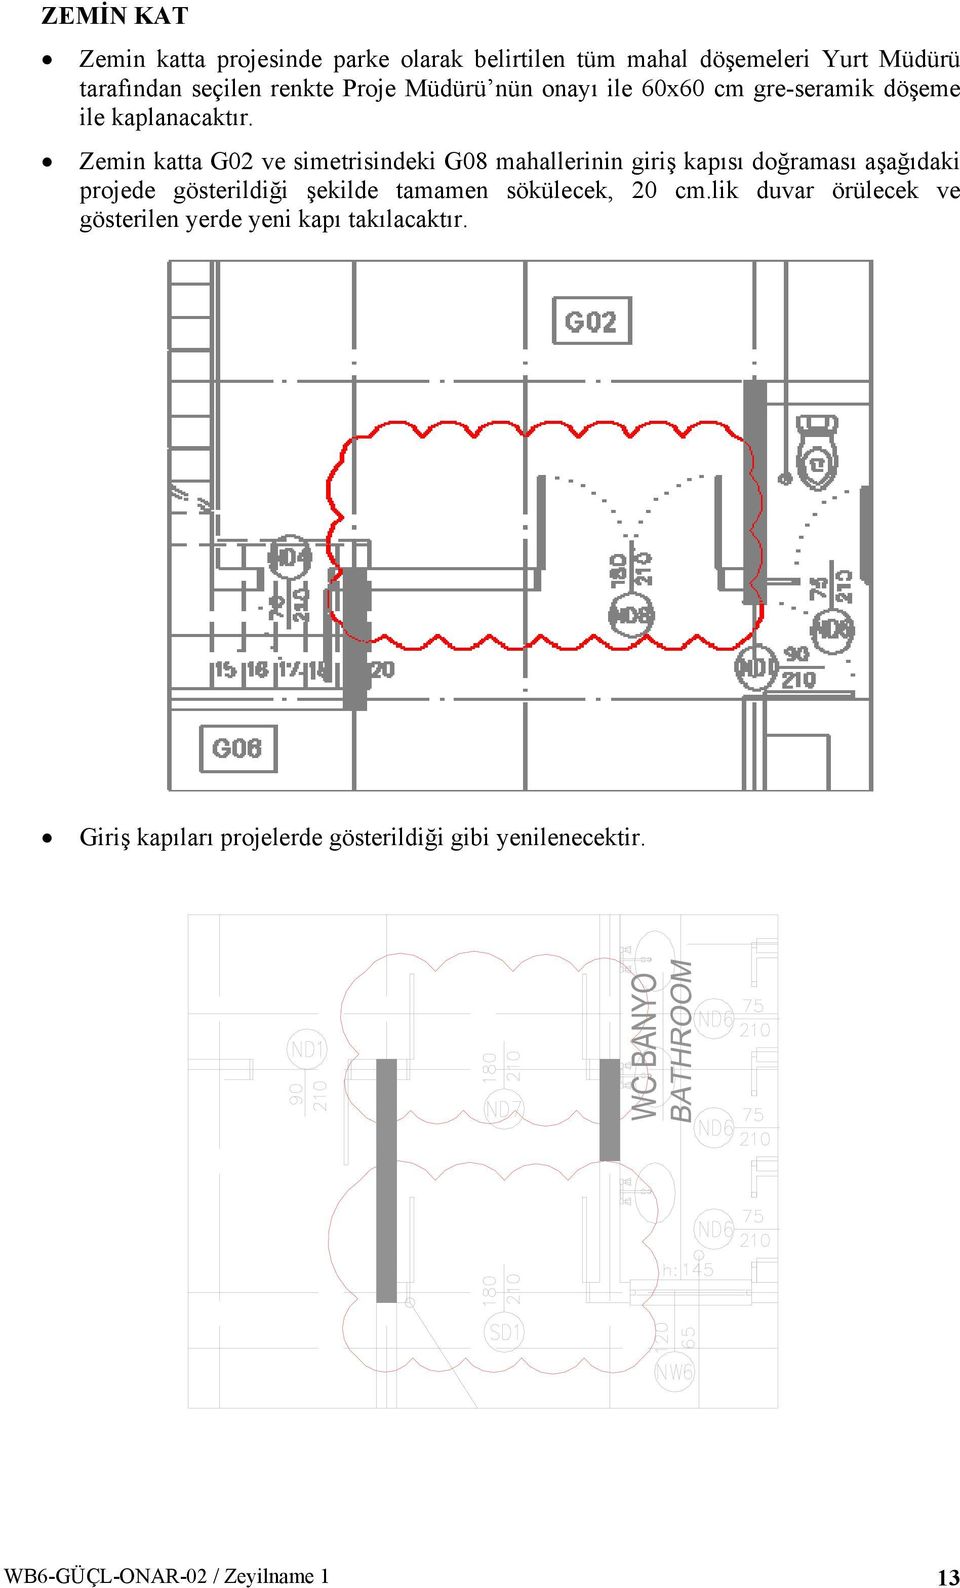 Zemin katta G0 ve simetrisindeki G08 mahallerinin giriş kapısı doğraması aşağıdaki projede gösterildiği şekilde